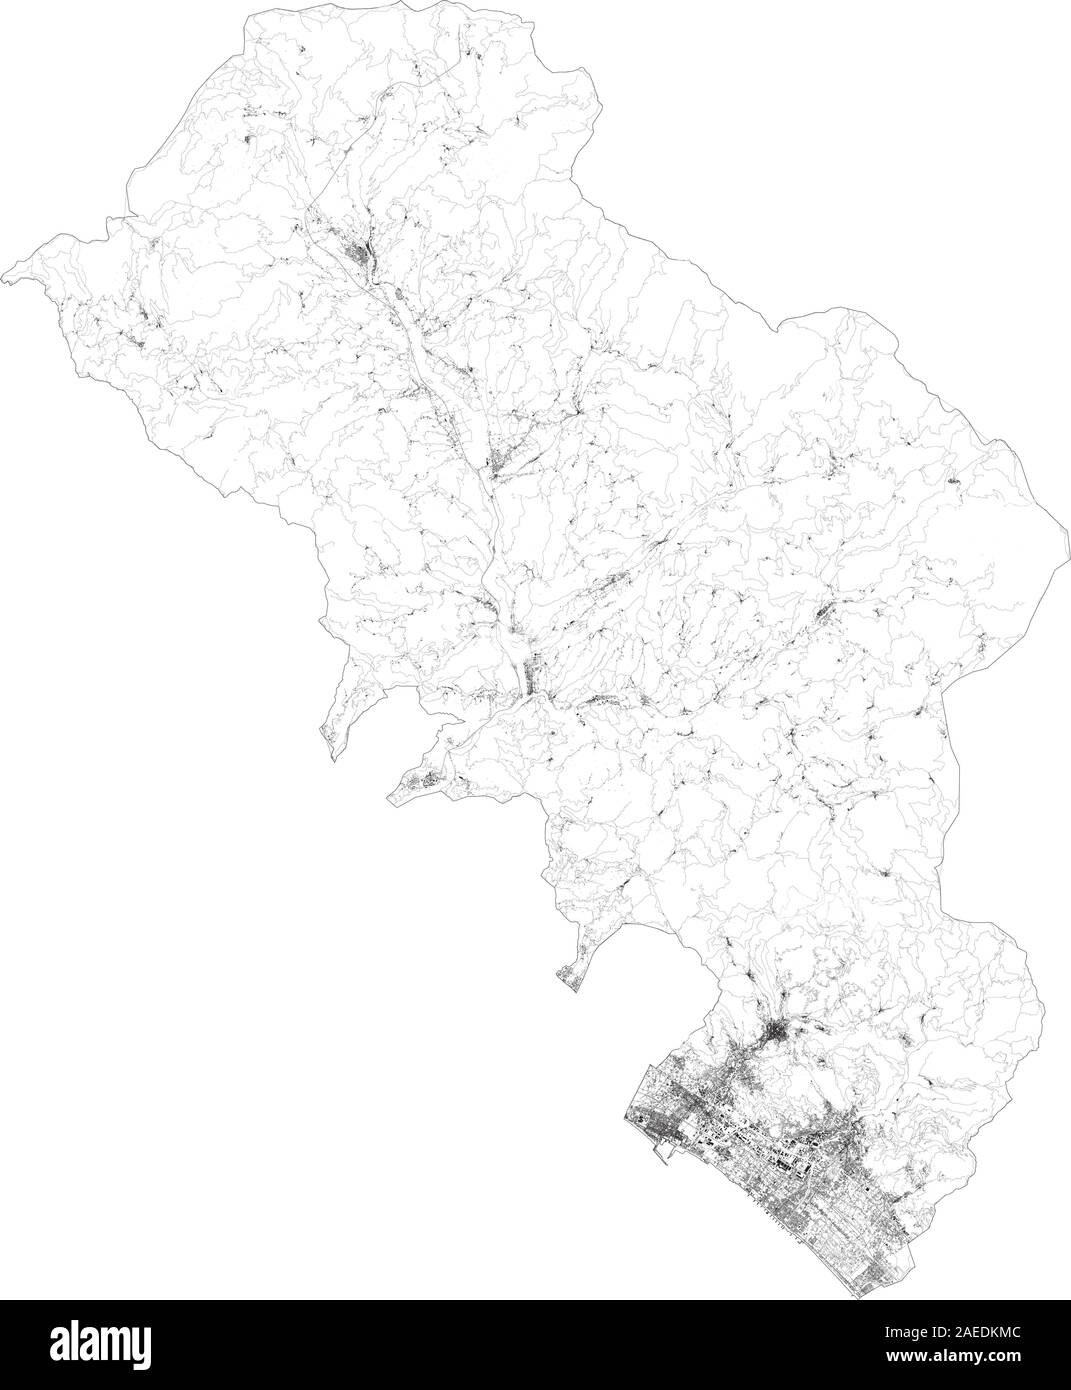 Sat-Karte der Provinz Massa-Carrara, Städte und Straßen, Gebäude und Straßen der Umgebung. Toskana, Italien. Karte Straßen, Ring Road Stock Vektor